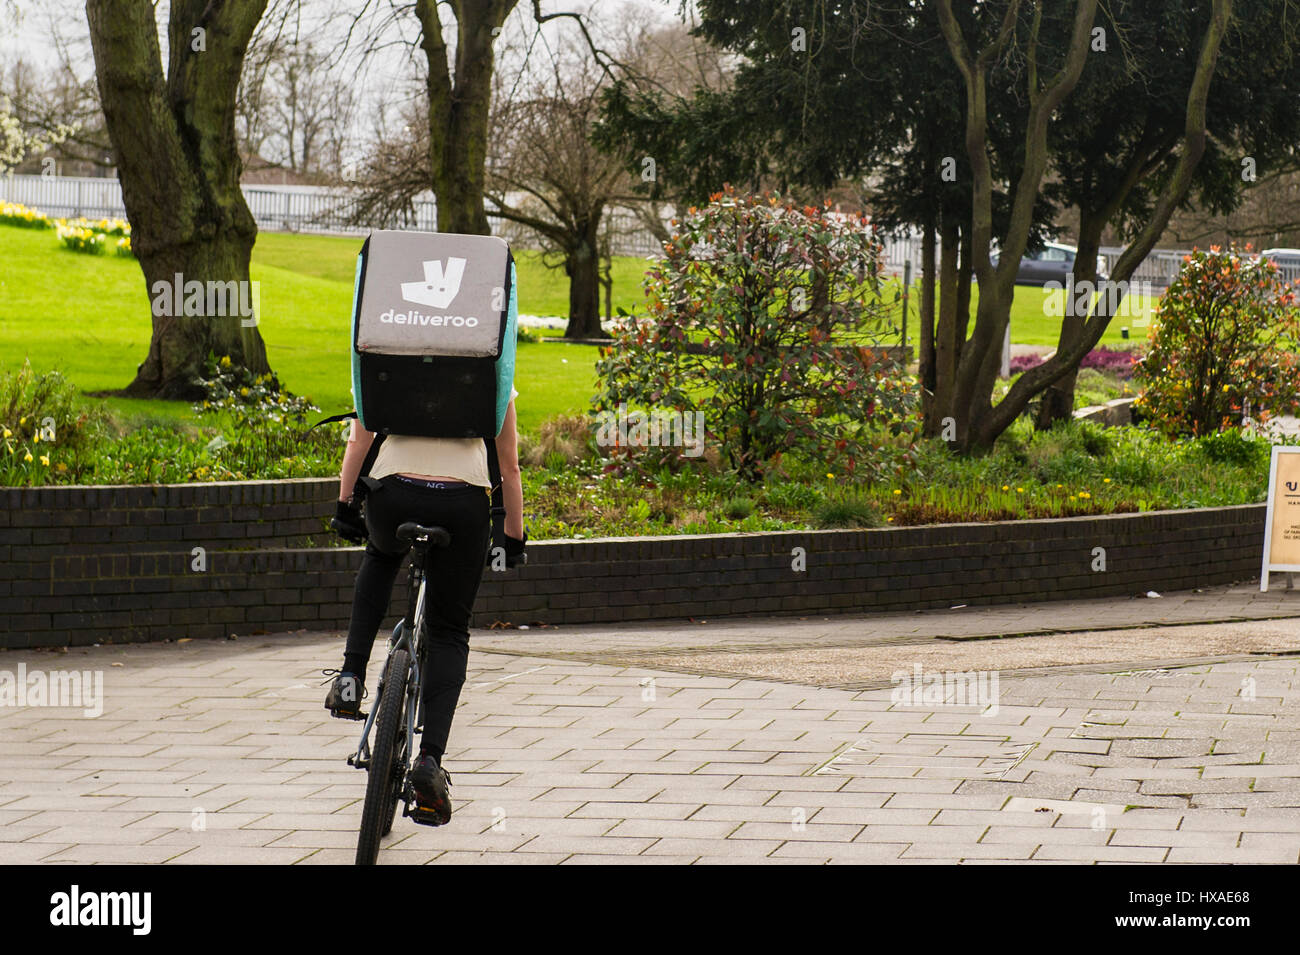 Deliveroo Essen Mitarbeiter Lieferbote Fahrrad schieben mit einem Lebensmittel-Lieferung-Box auf dem Rücken. Stockfoto